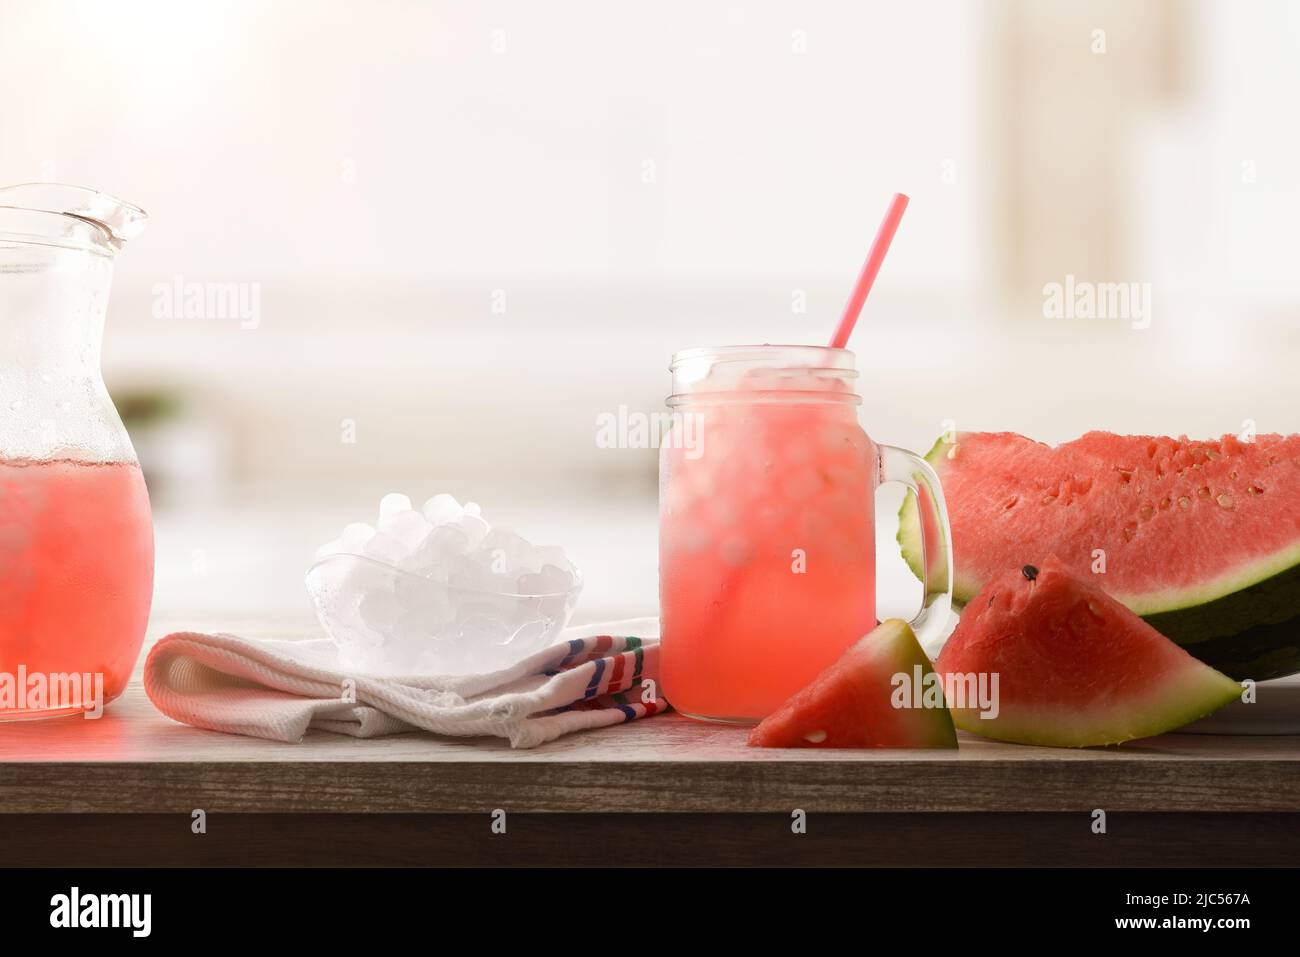 In einer Schüssel auf einem Holztisch in einer Küche Wassermelonen-Slush mit geschnittenem Obst und zerkleinertem Eis. Vorderansicht. Horizontale Zusammensetzung. Stockfoto